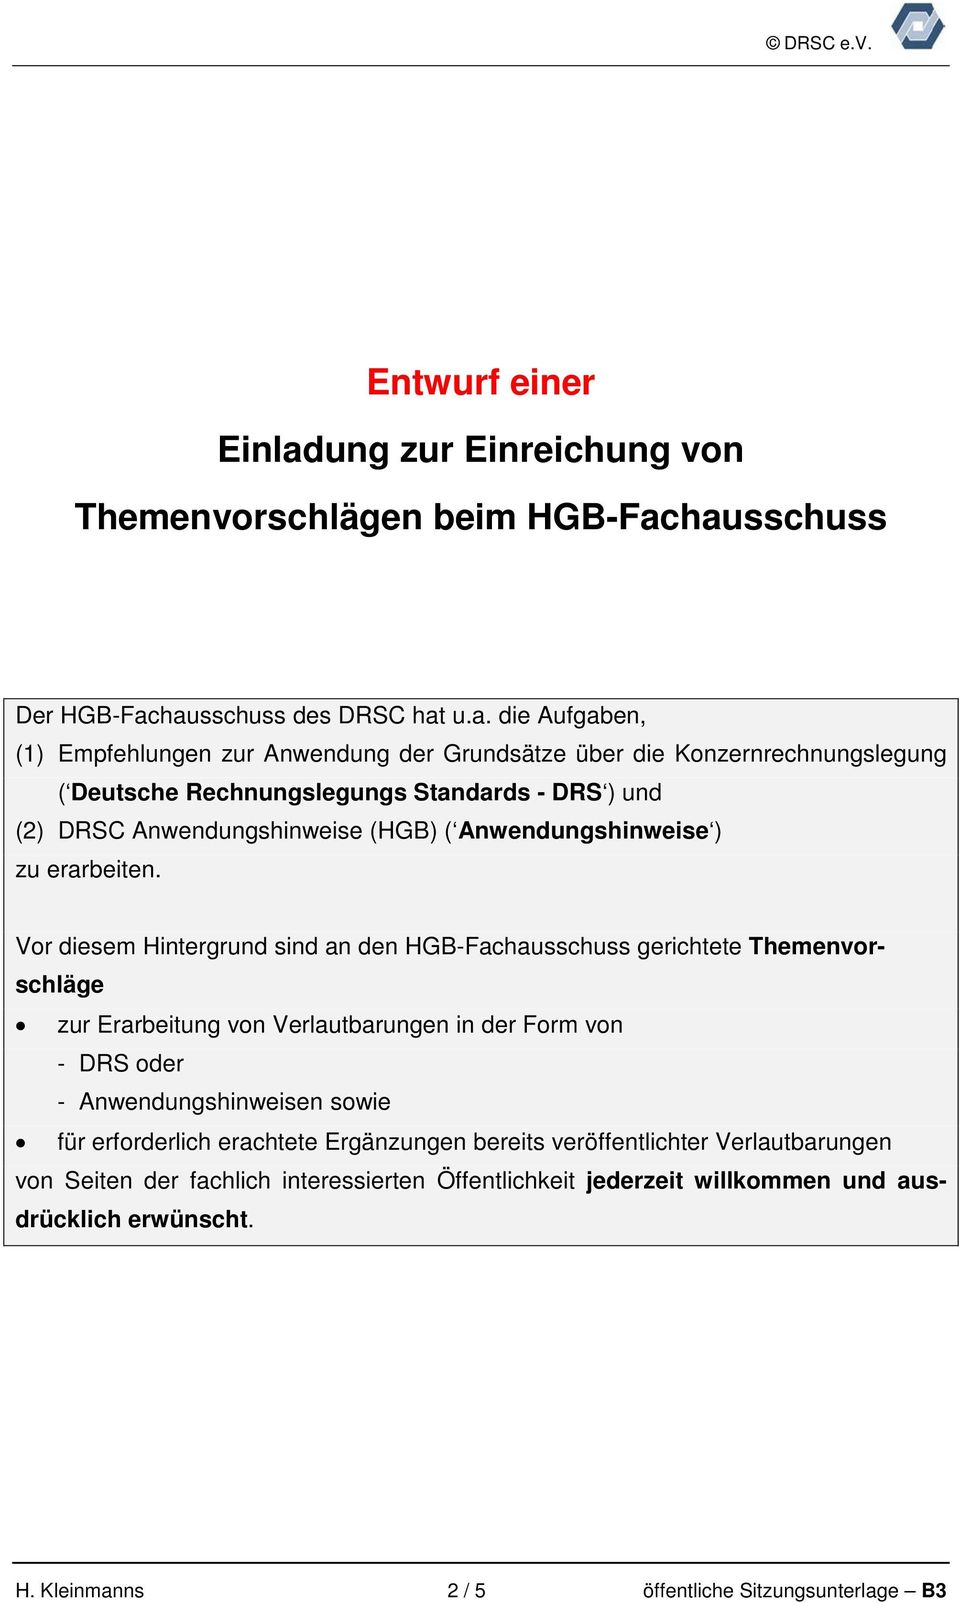 hausschuss Der HGB-Fachausschuss des DRSC hat u.a. die Aufgaben, (1) Empfehlungen zur Anwendung der Grundsätze über die Konzernrechnungslegung ( Deutsche Rechnungslegungs Standards - DRS